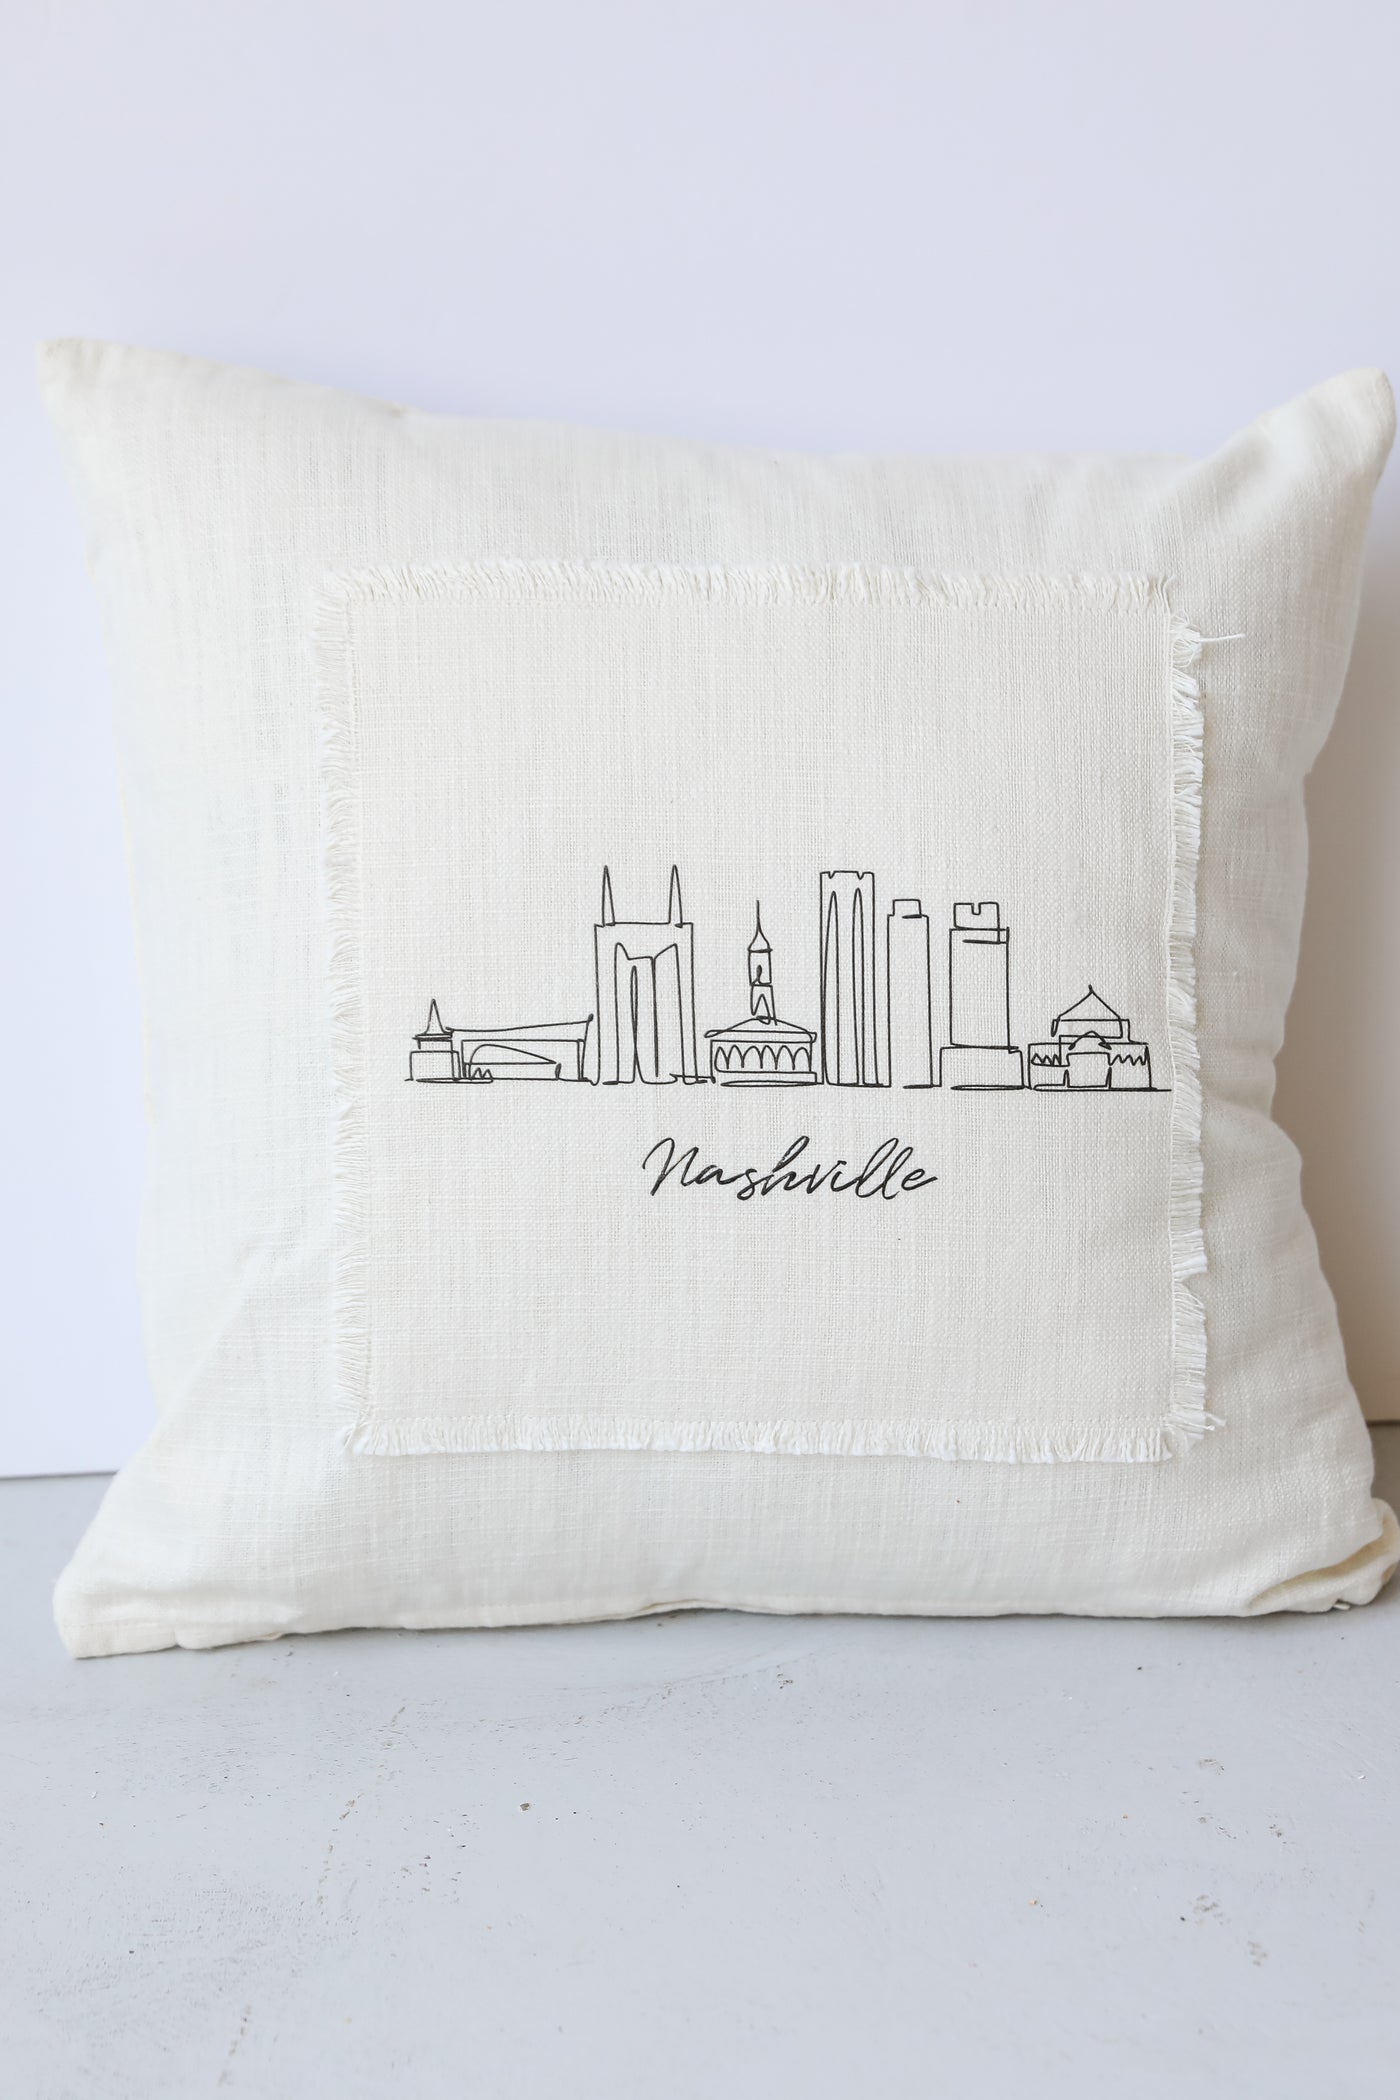 Nashville City Scape Pillow